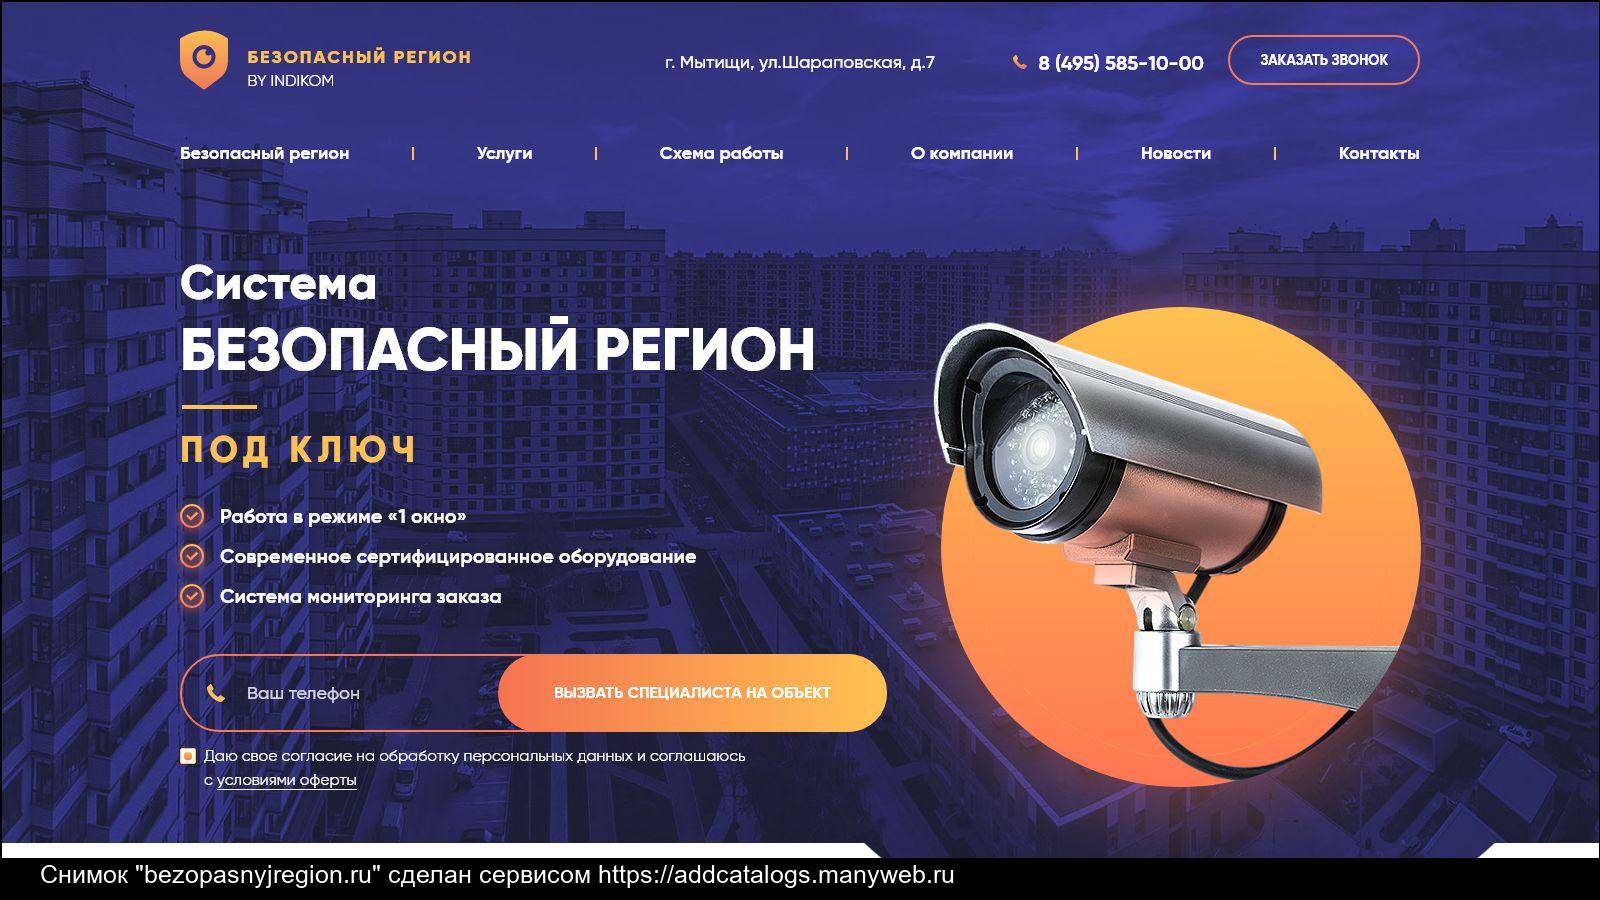 Облачное видеонаблюдение в россии растет в 5 раз быстрее рынка в целом. обзор: рынок решений для видеонаблюдения 2021 - cnews